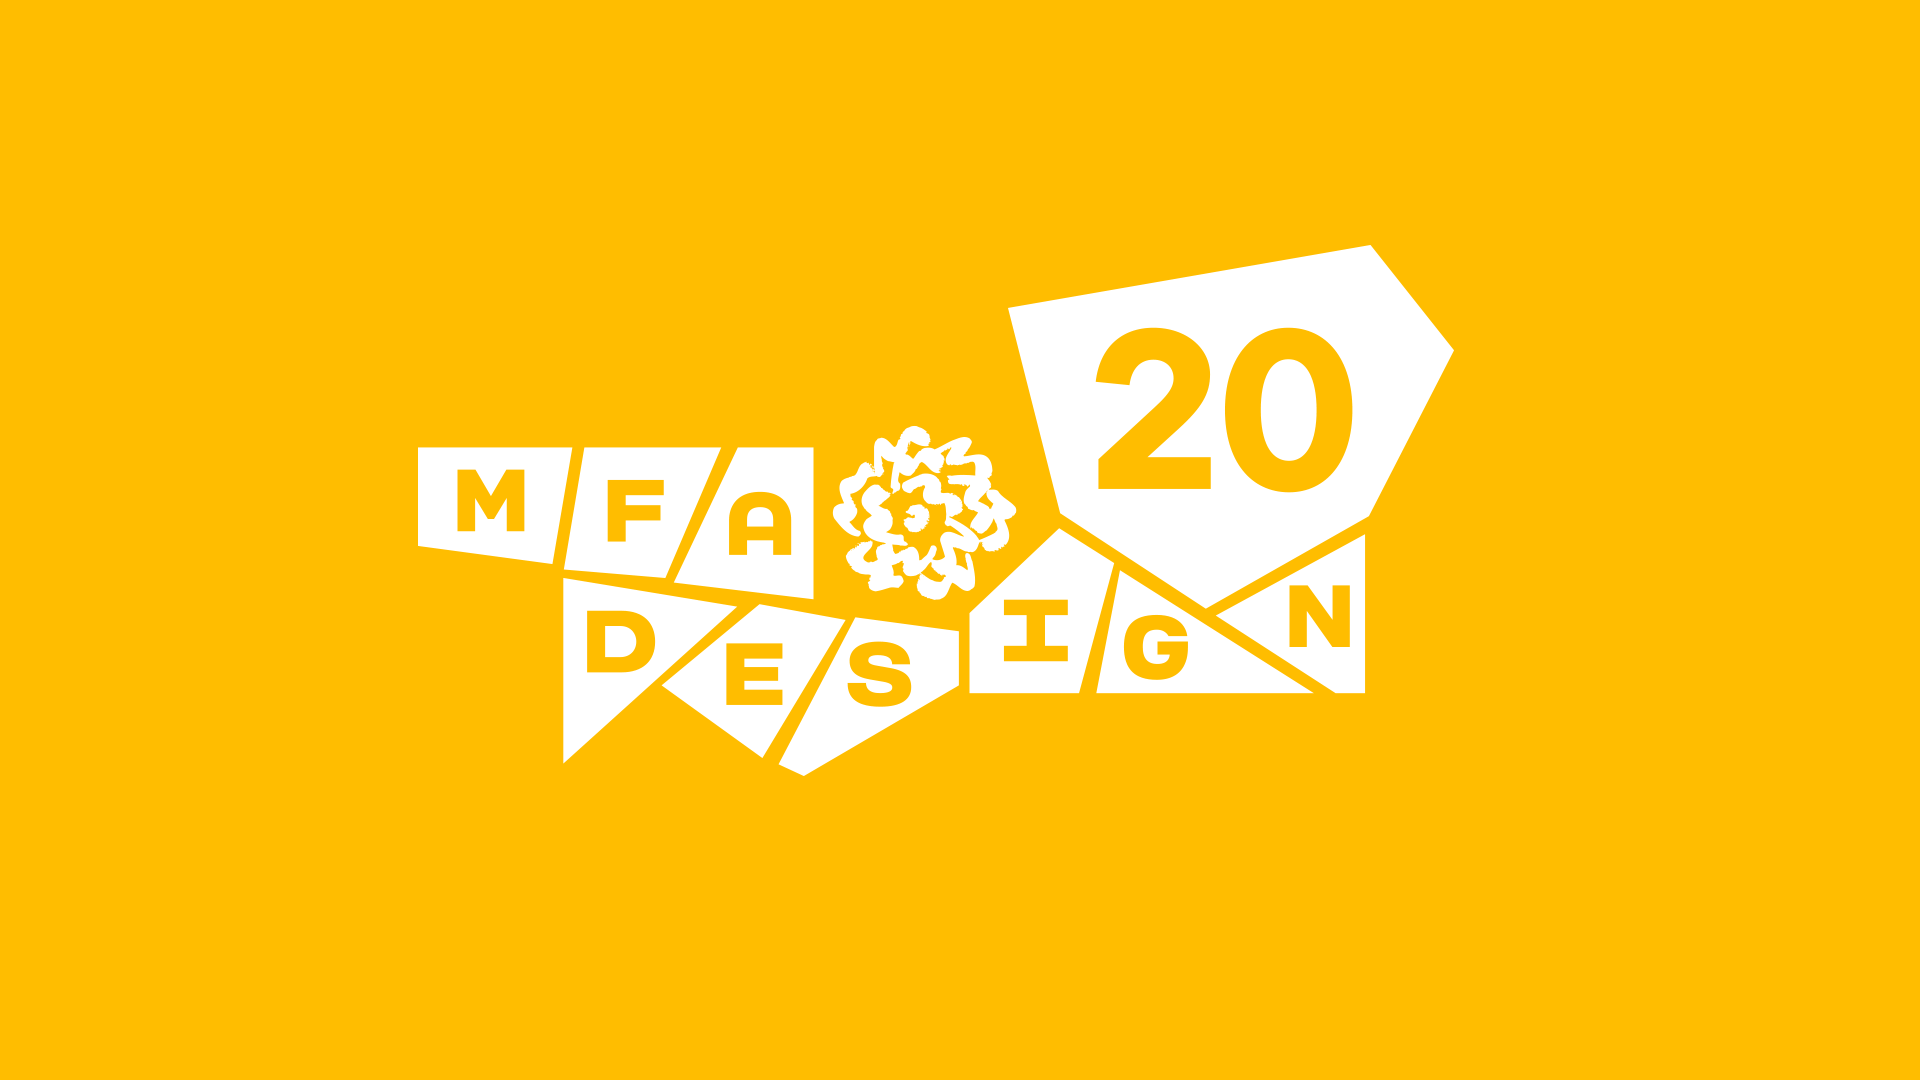 MFA Design logo white on yellow background